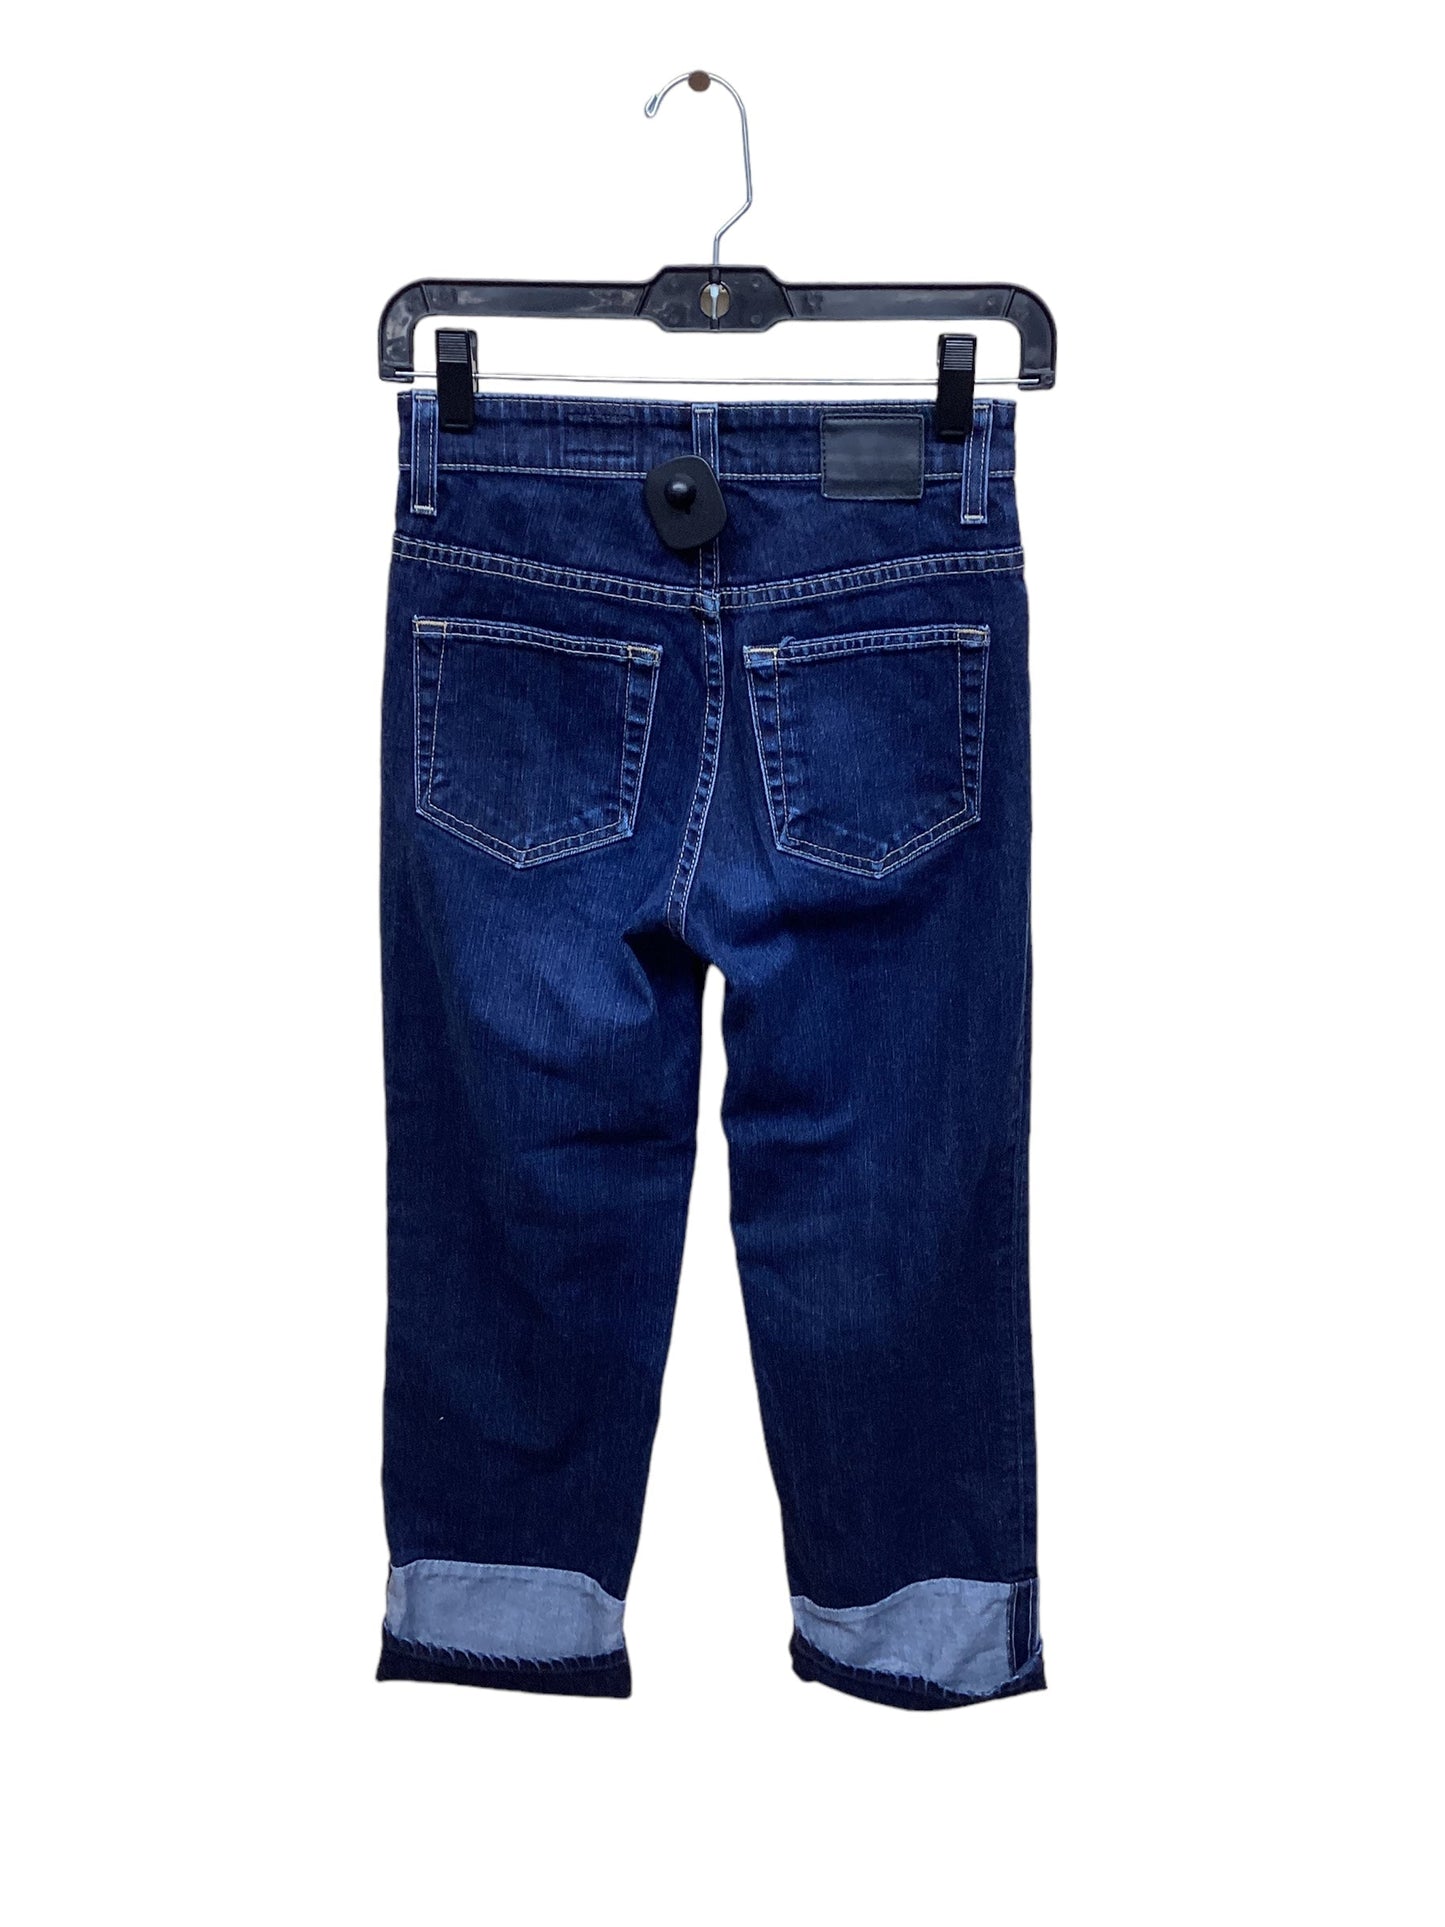 Blue Denim Jeans Straight Adriano Goldschmied, Size 0